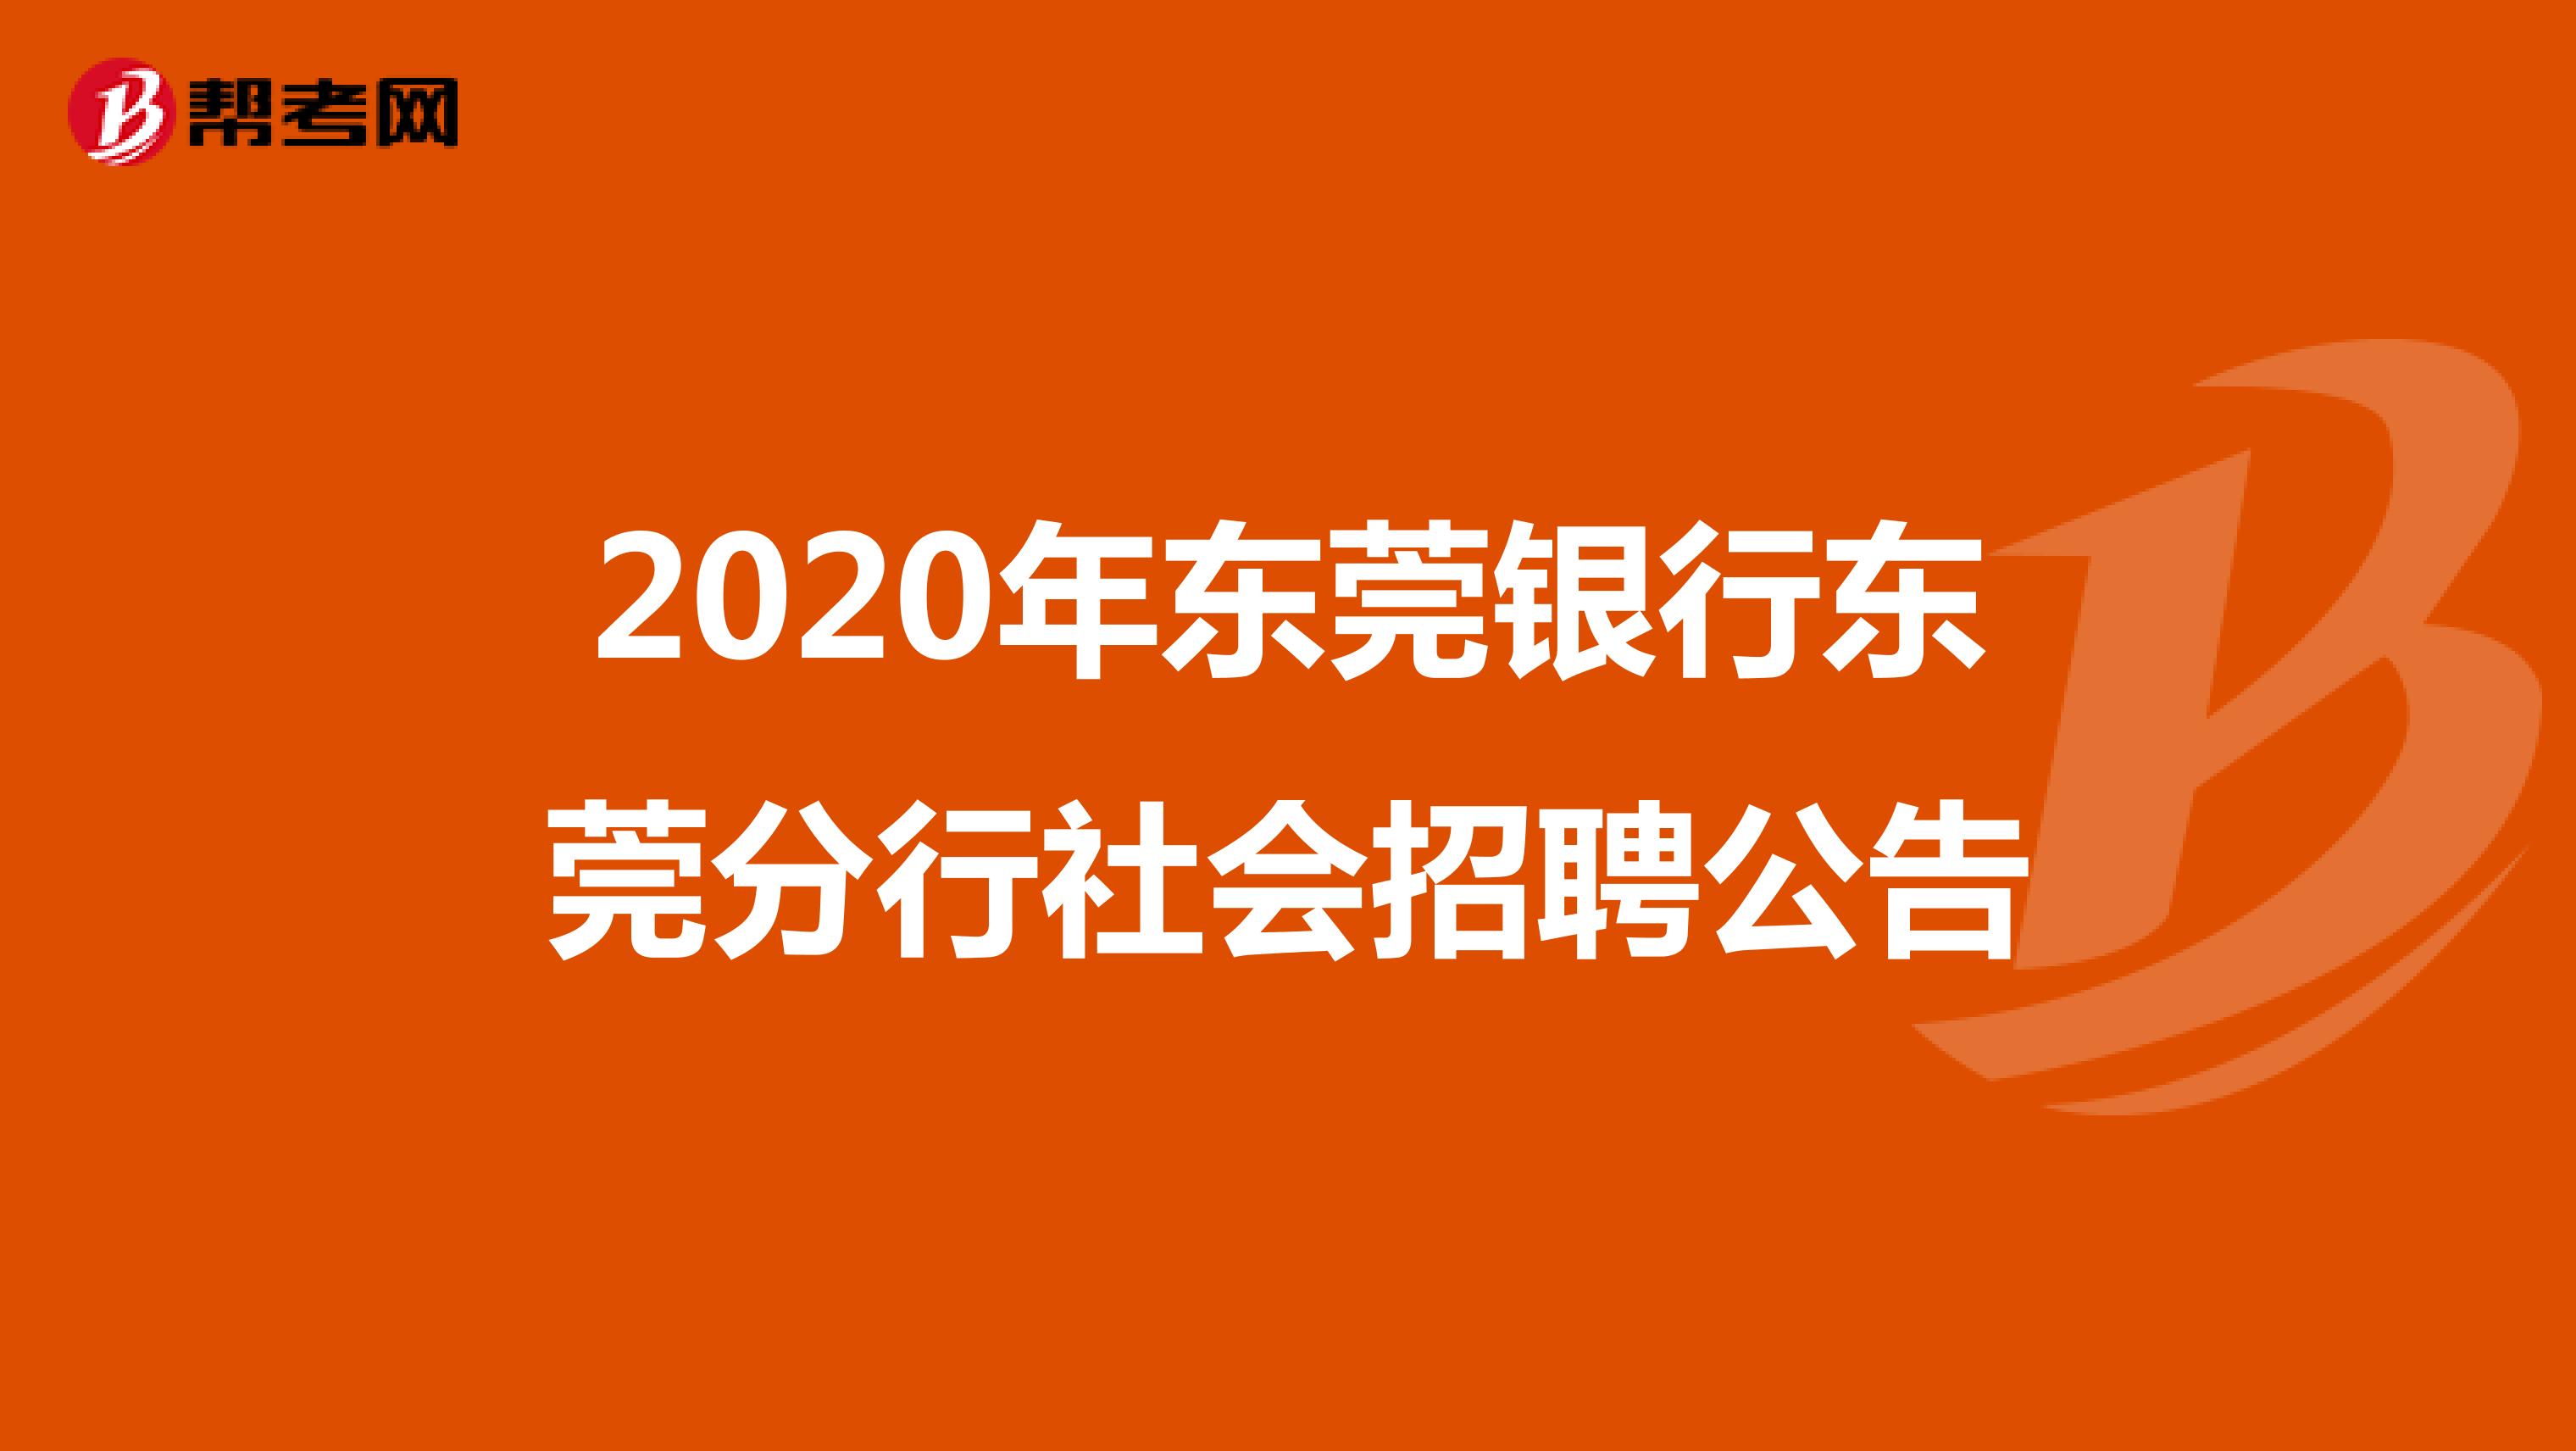 2020年东莞银行东莞分行社会招聘公告